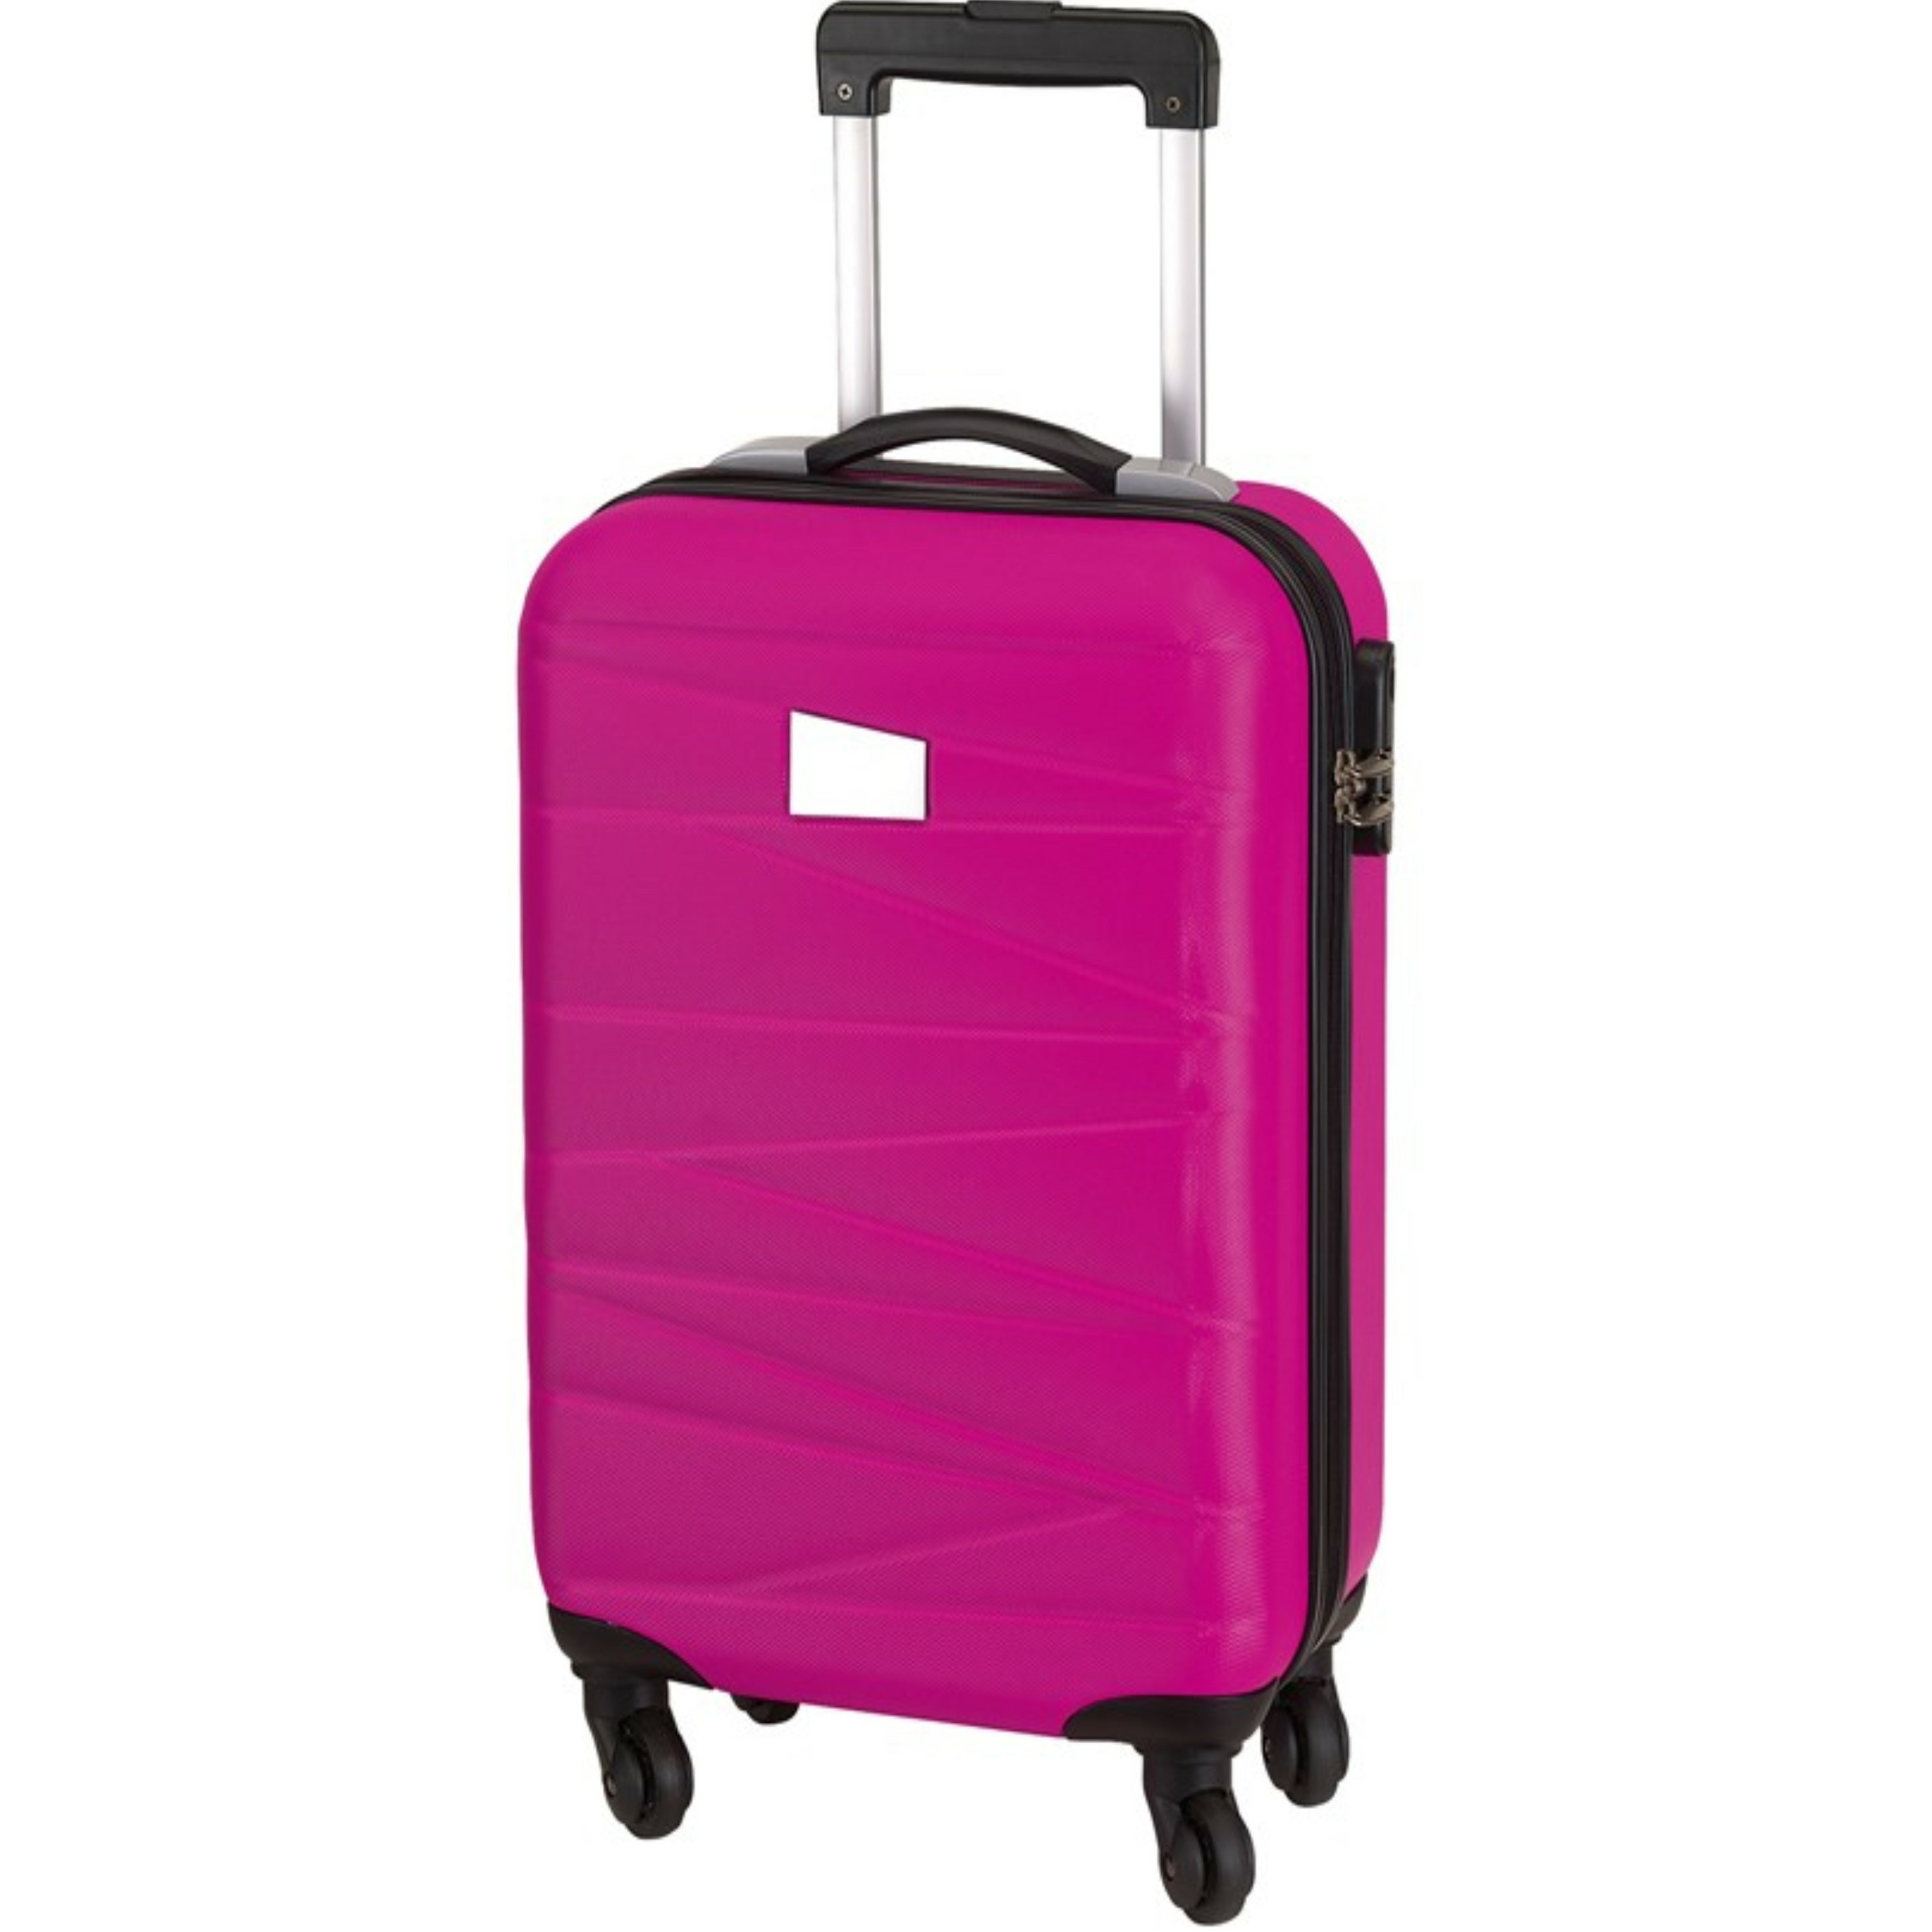 Cabine handbagage reis trolley koffer met zwenkwielen 55 x 35 x 20 cm fuchsia roze